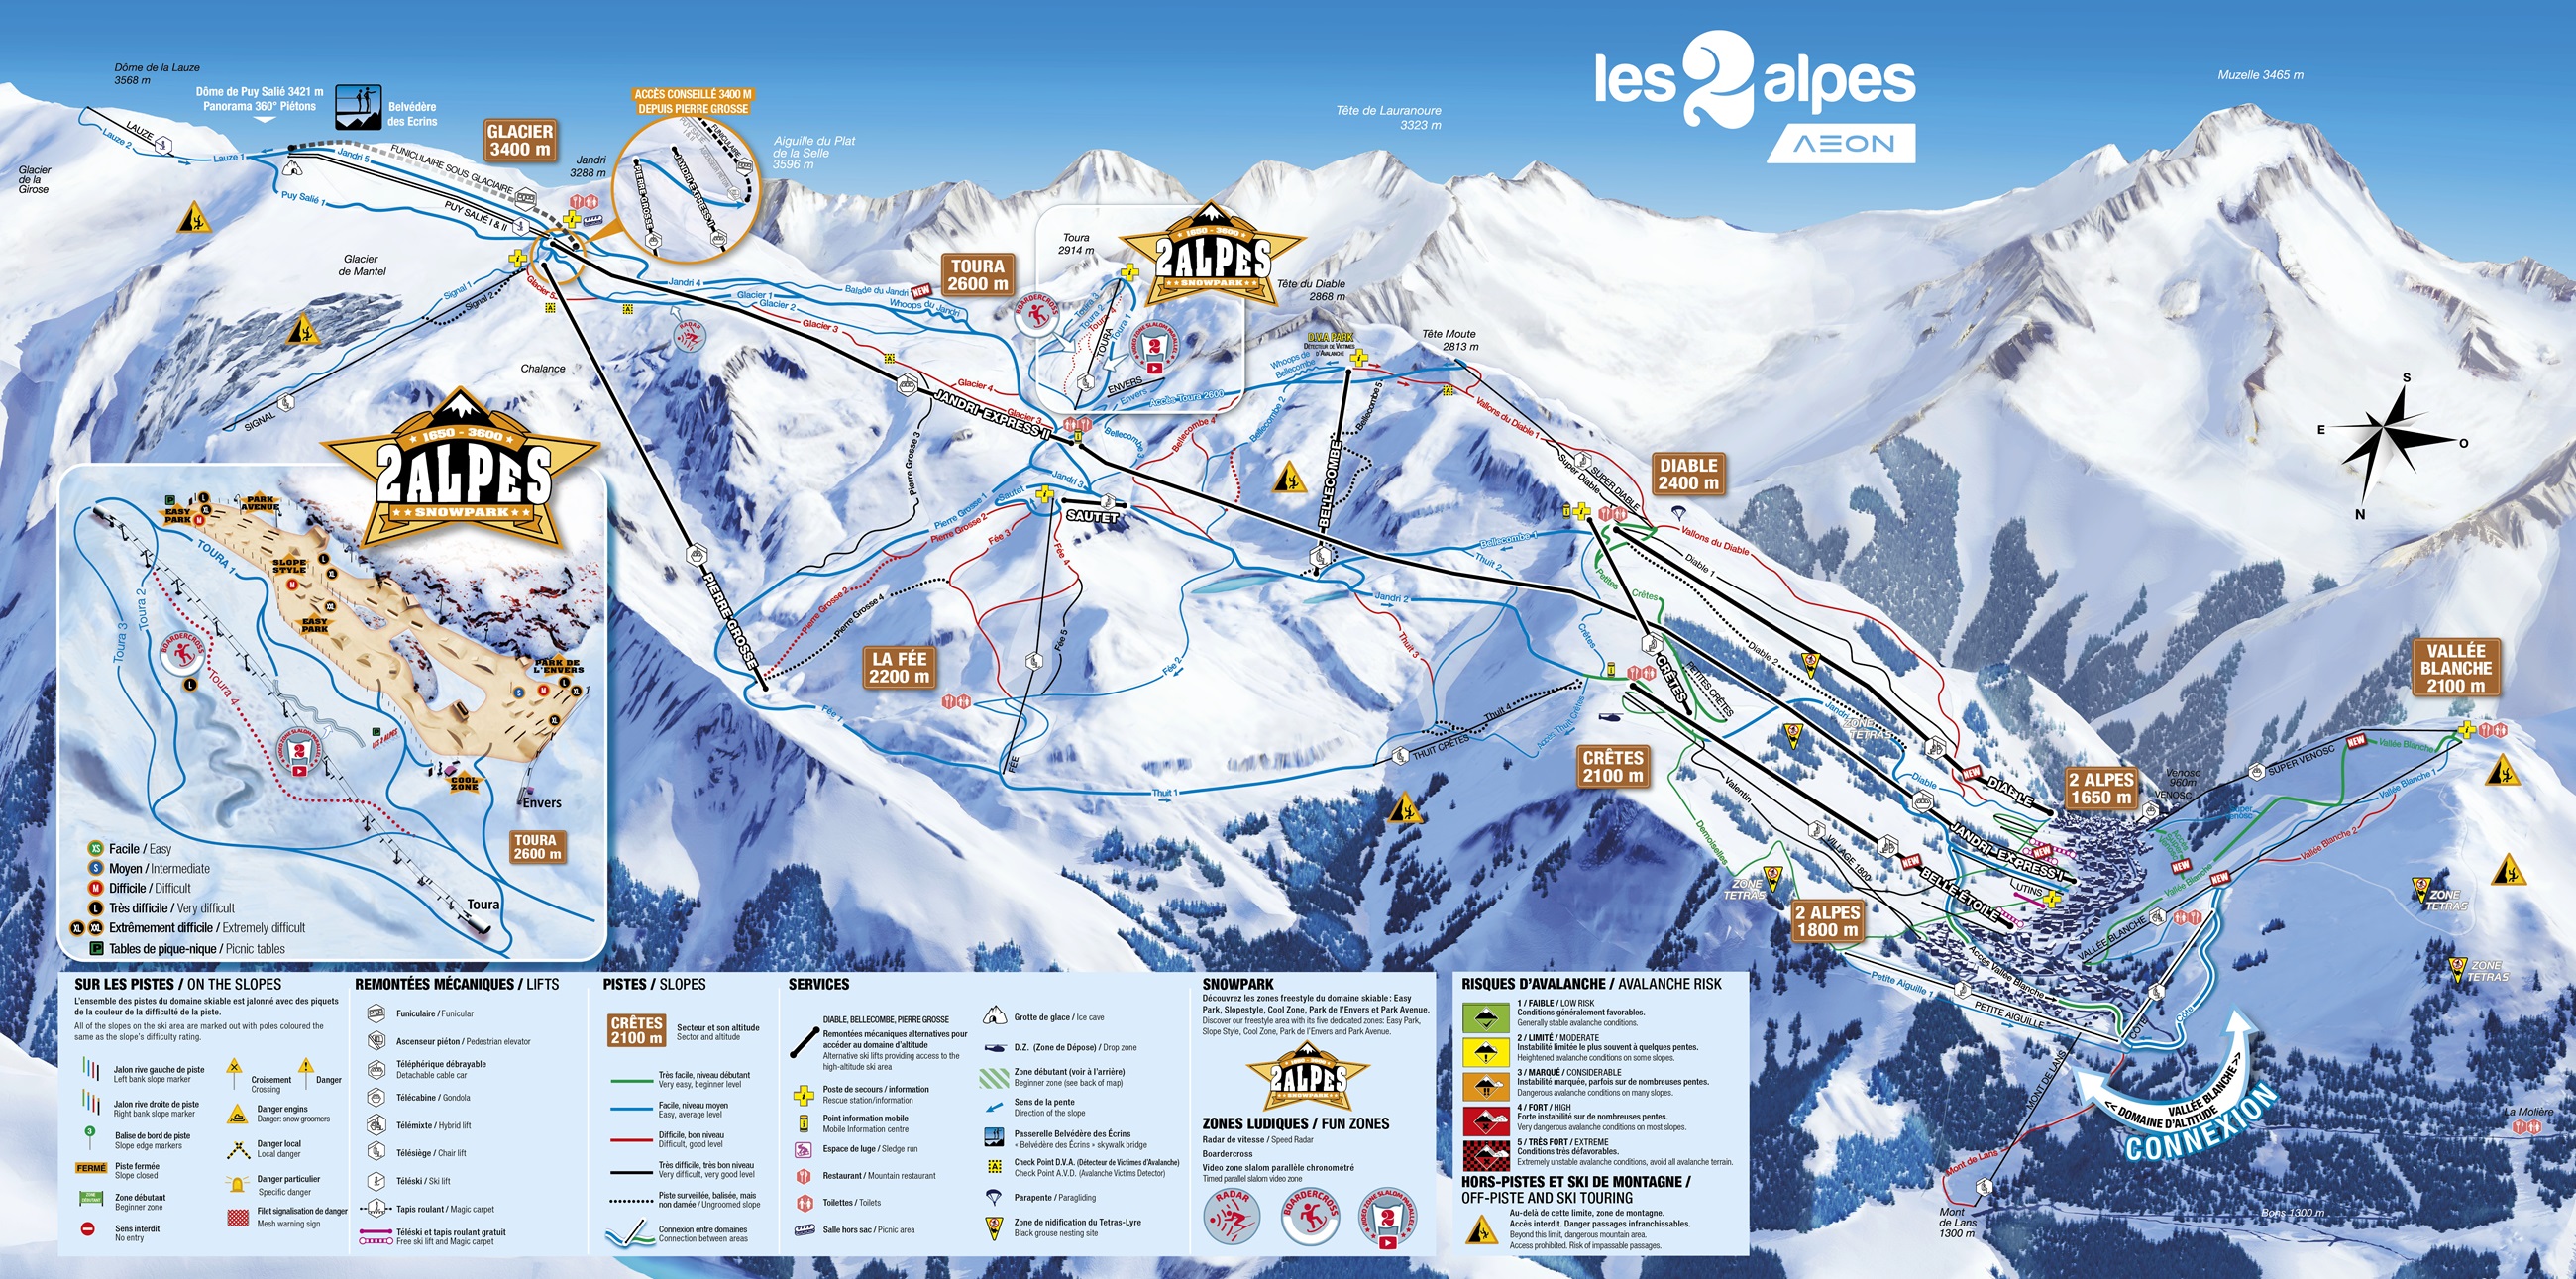 Cartina Les Deux Alpes - Mappa piste sci Les Deux Alpes